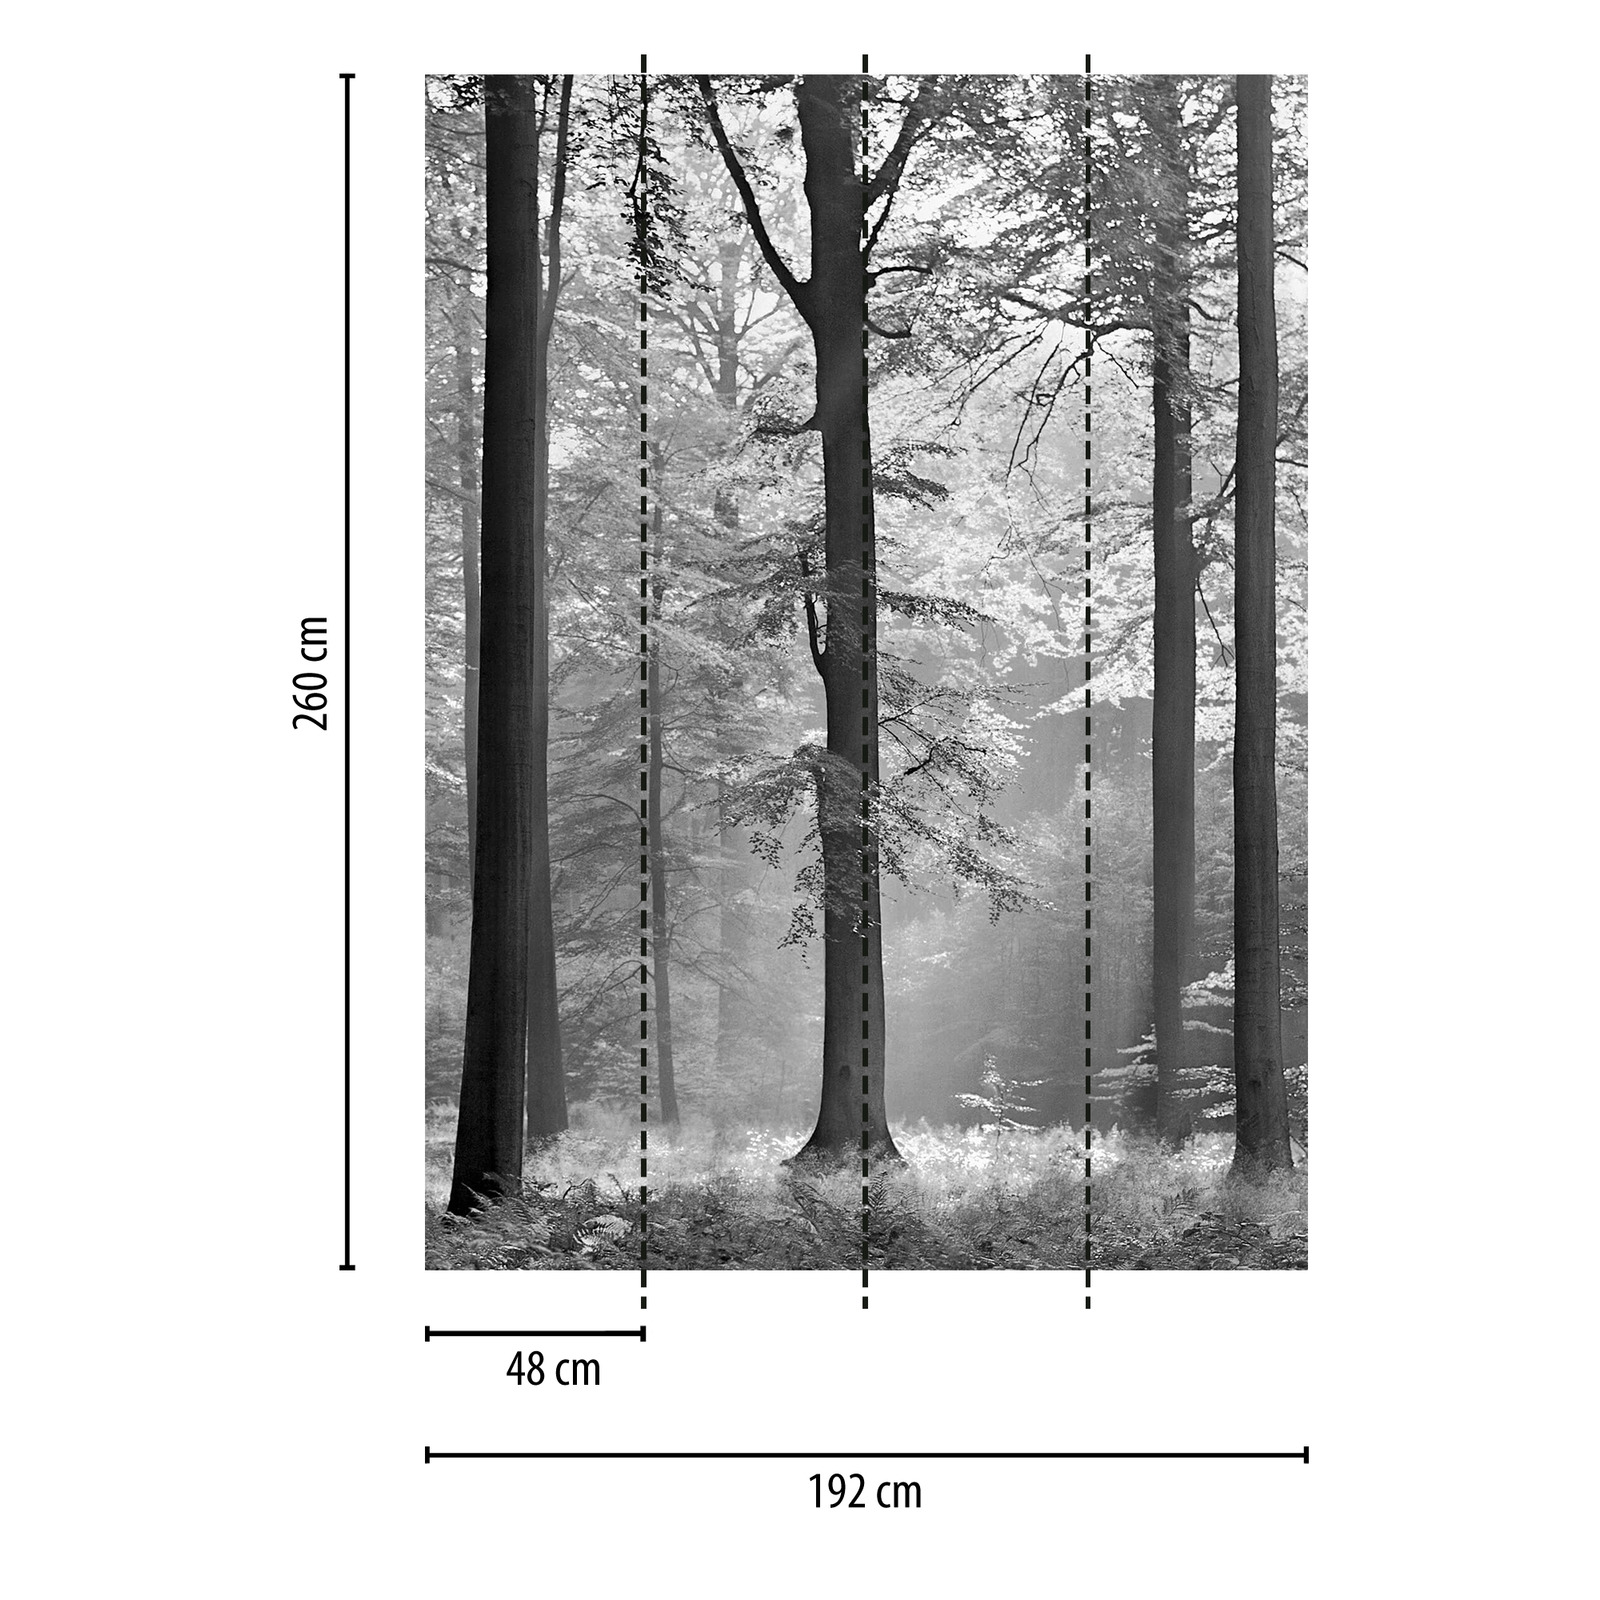             Zwart-wit fotobehang blad bos, staand formaat
        